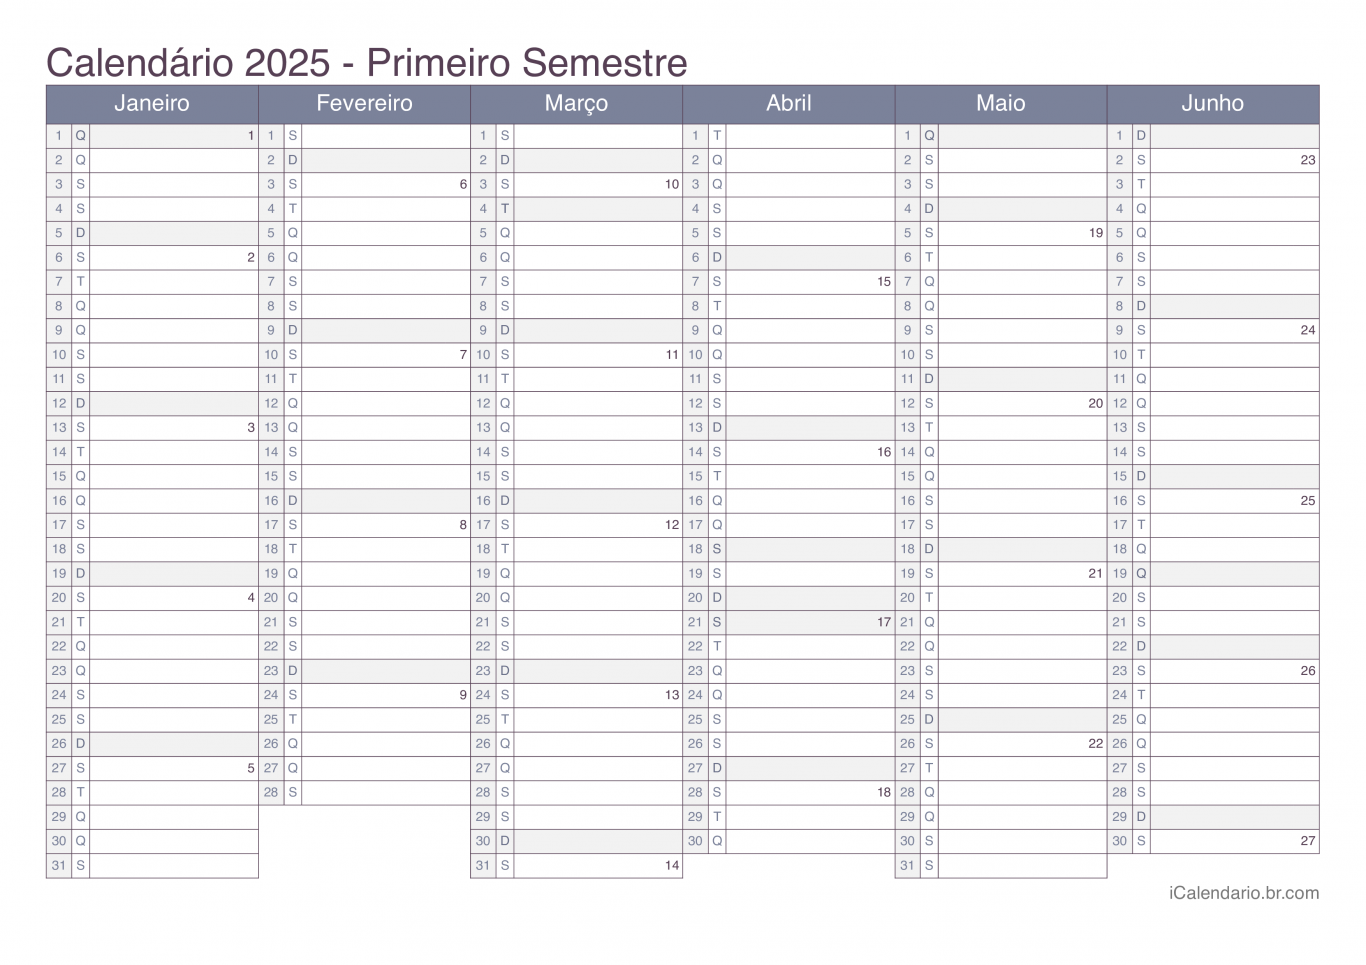 Calendário por semestre com números da semana 2025 - Office